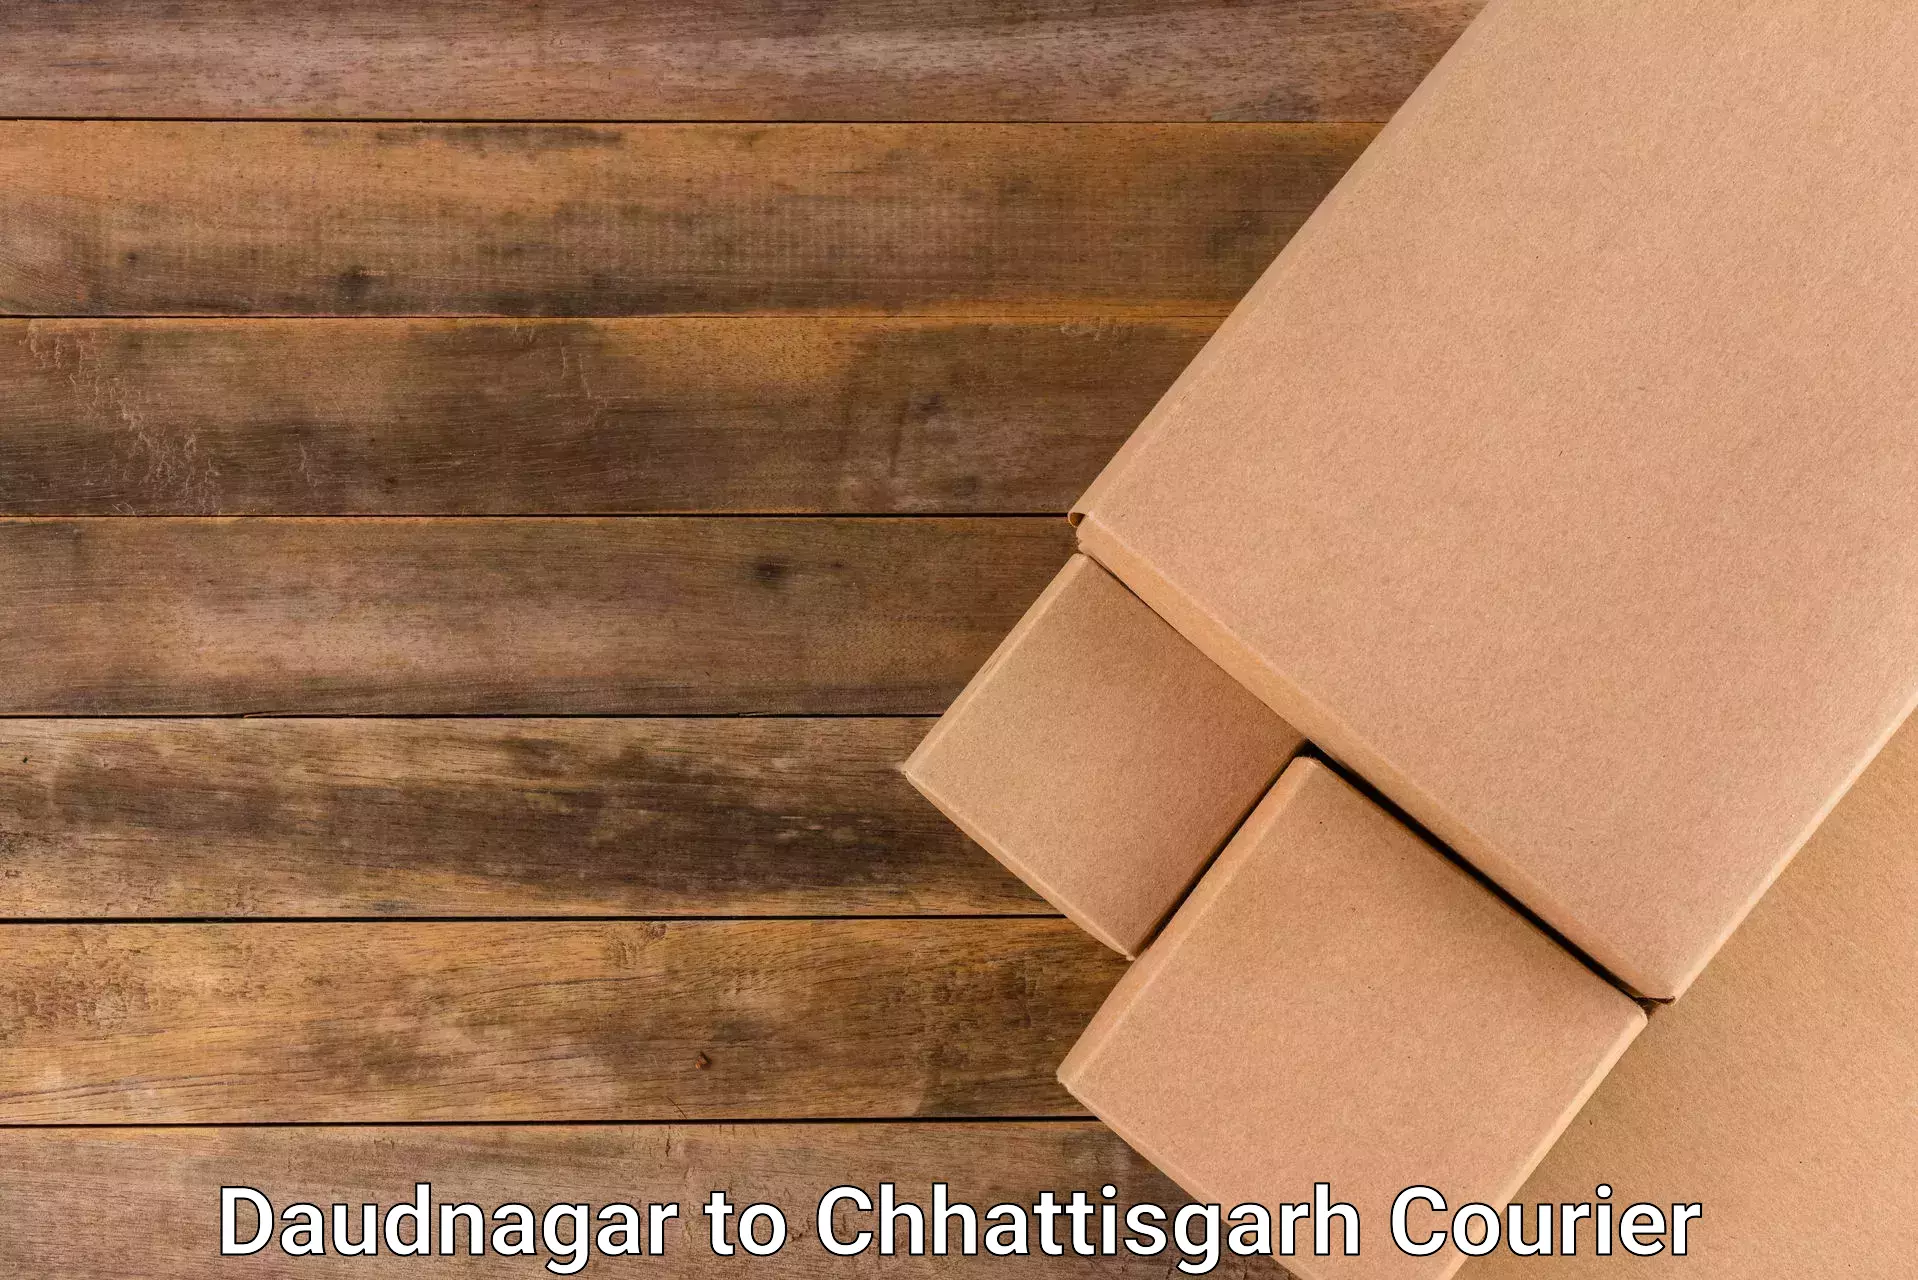 Cargo courier service Daudnagar to Chhattisgarh